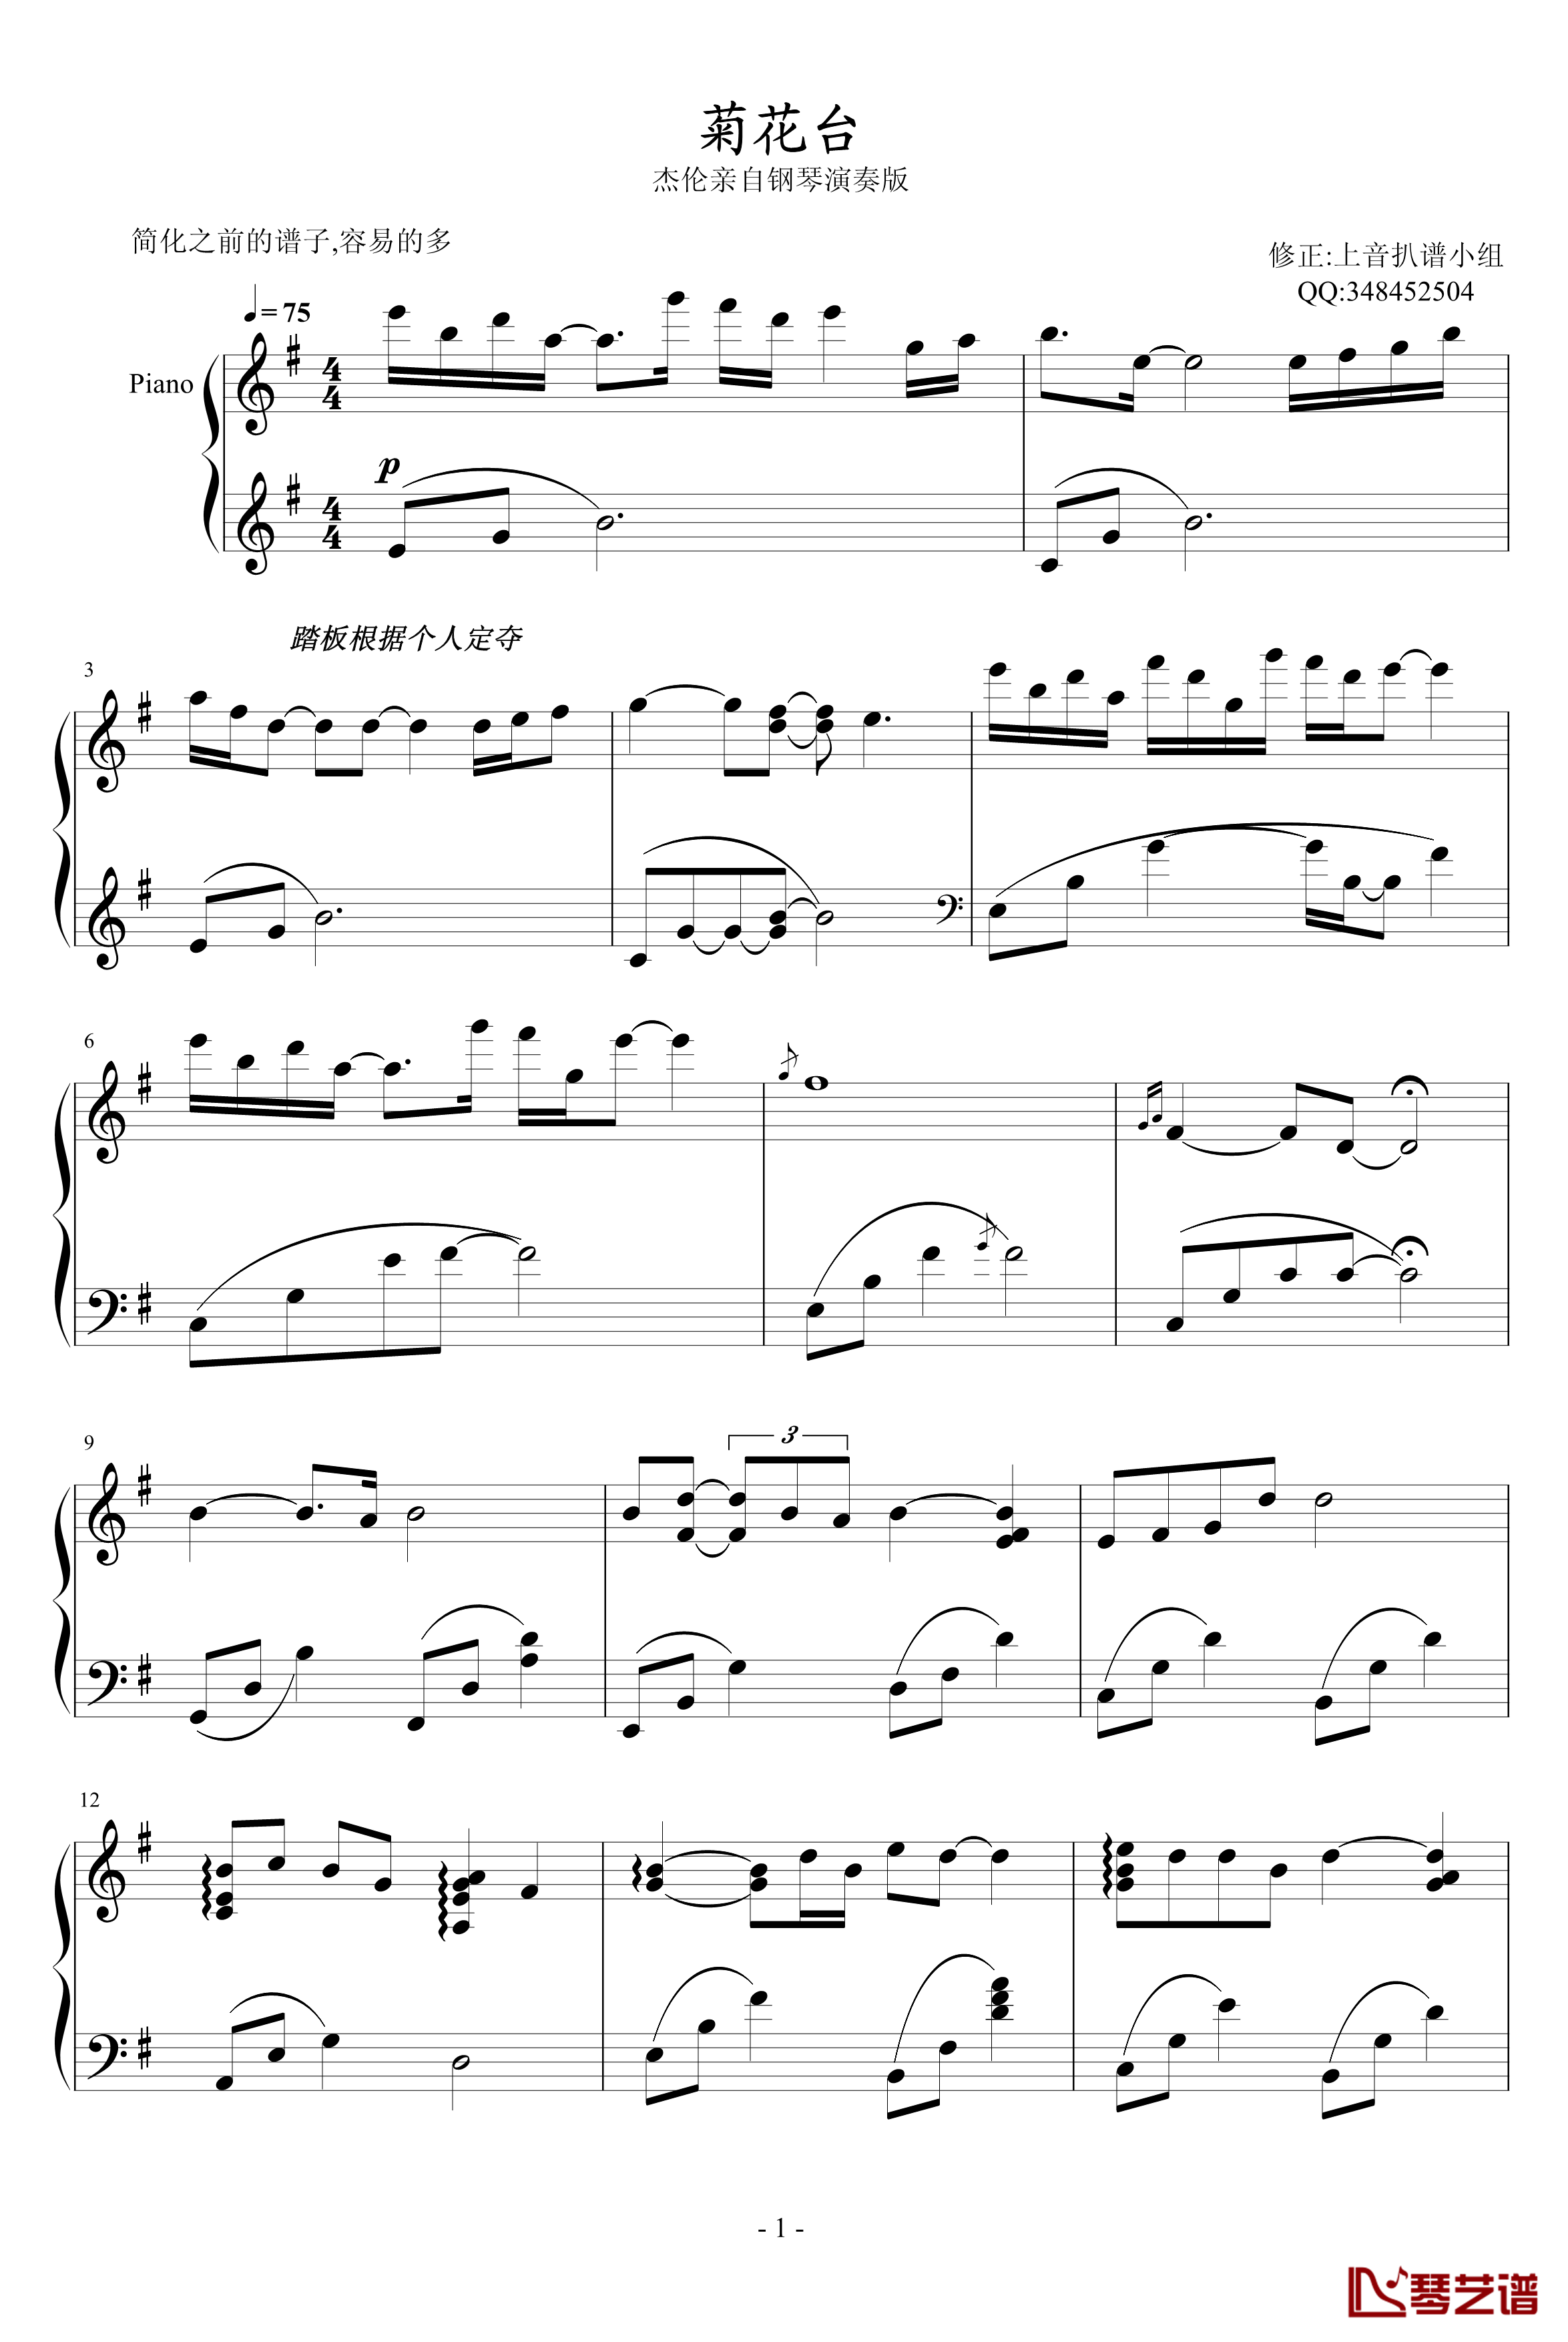 菊花台钢琴谱-较之前简化版-周杰伦